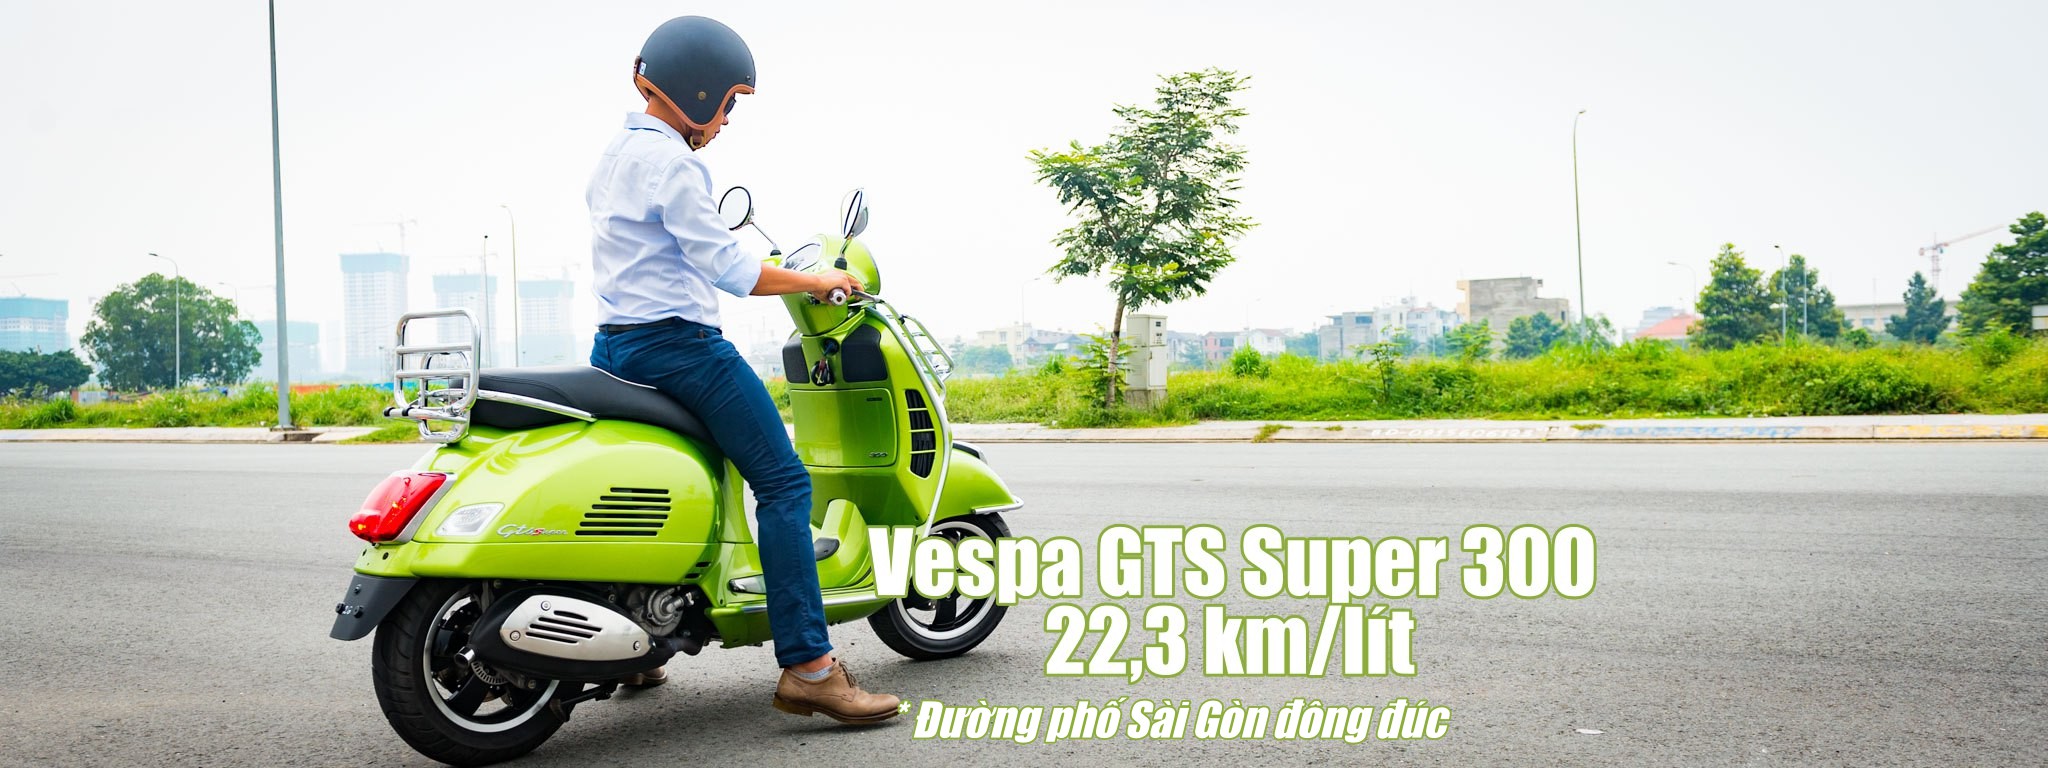 Vespa GTS Super 300 đi 22,3 km hết 1 lít xăng, đường phố Sài Gòn đông đúc